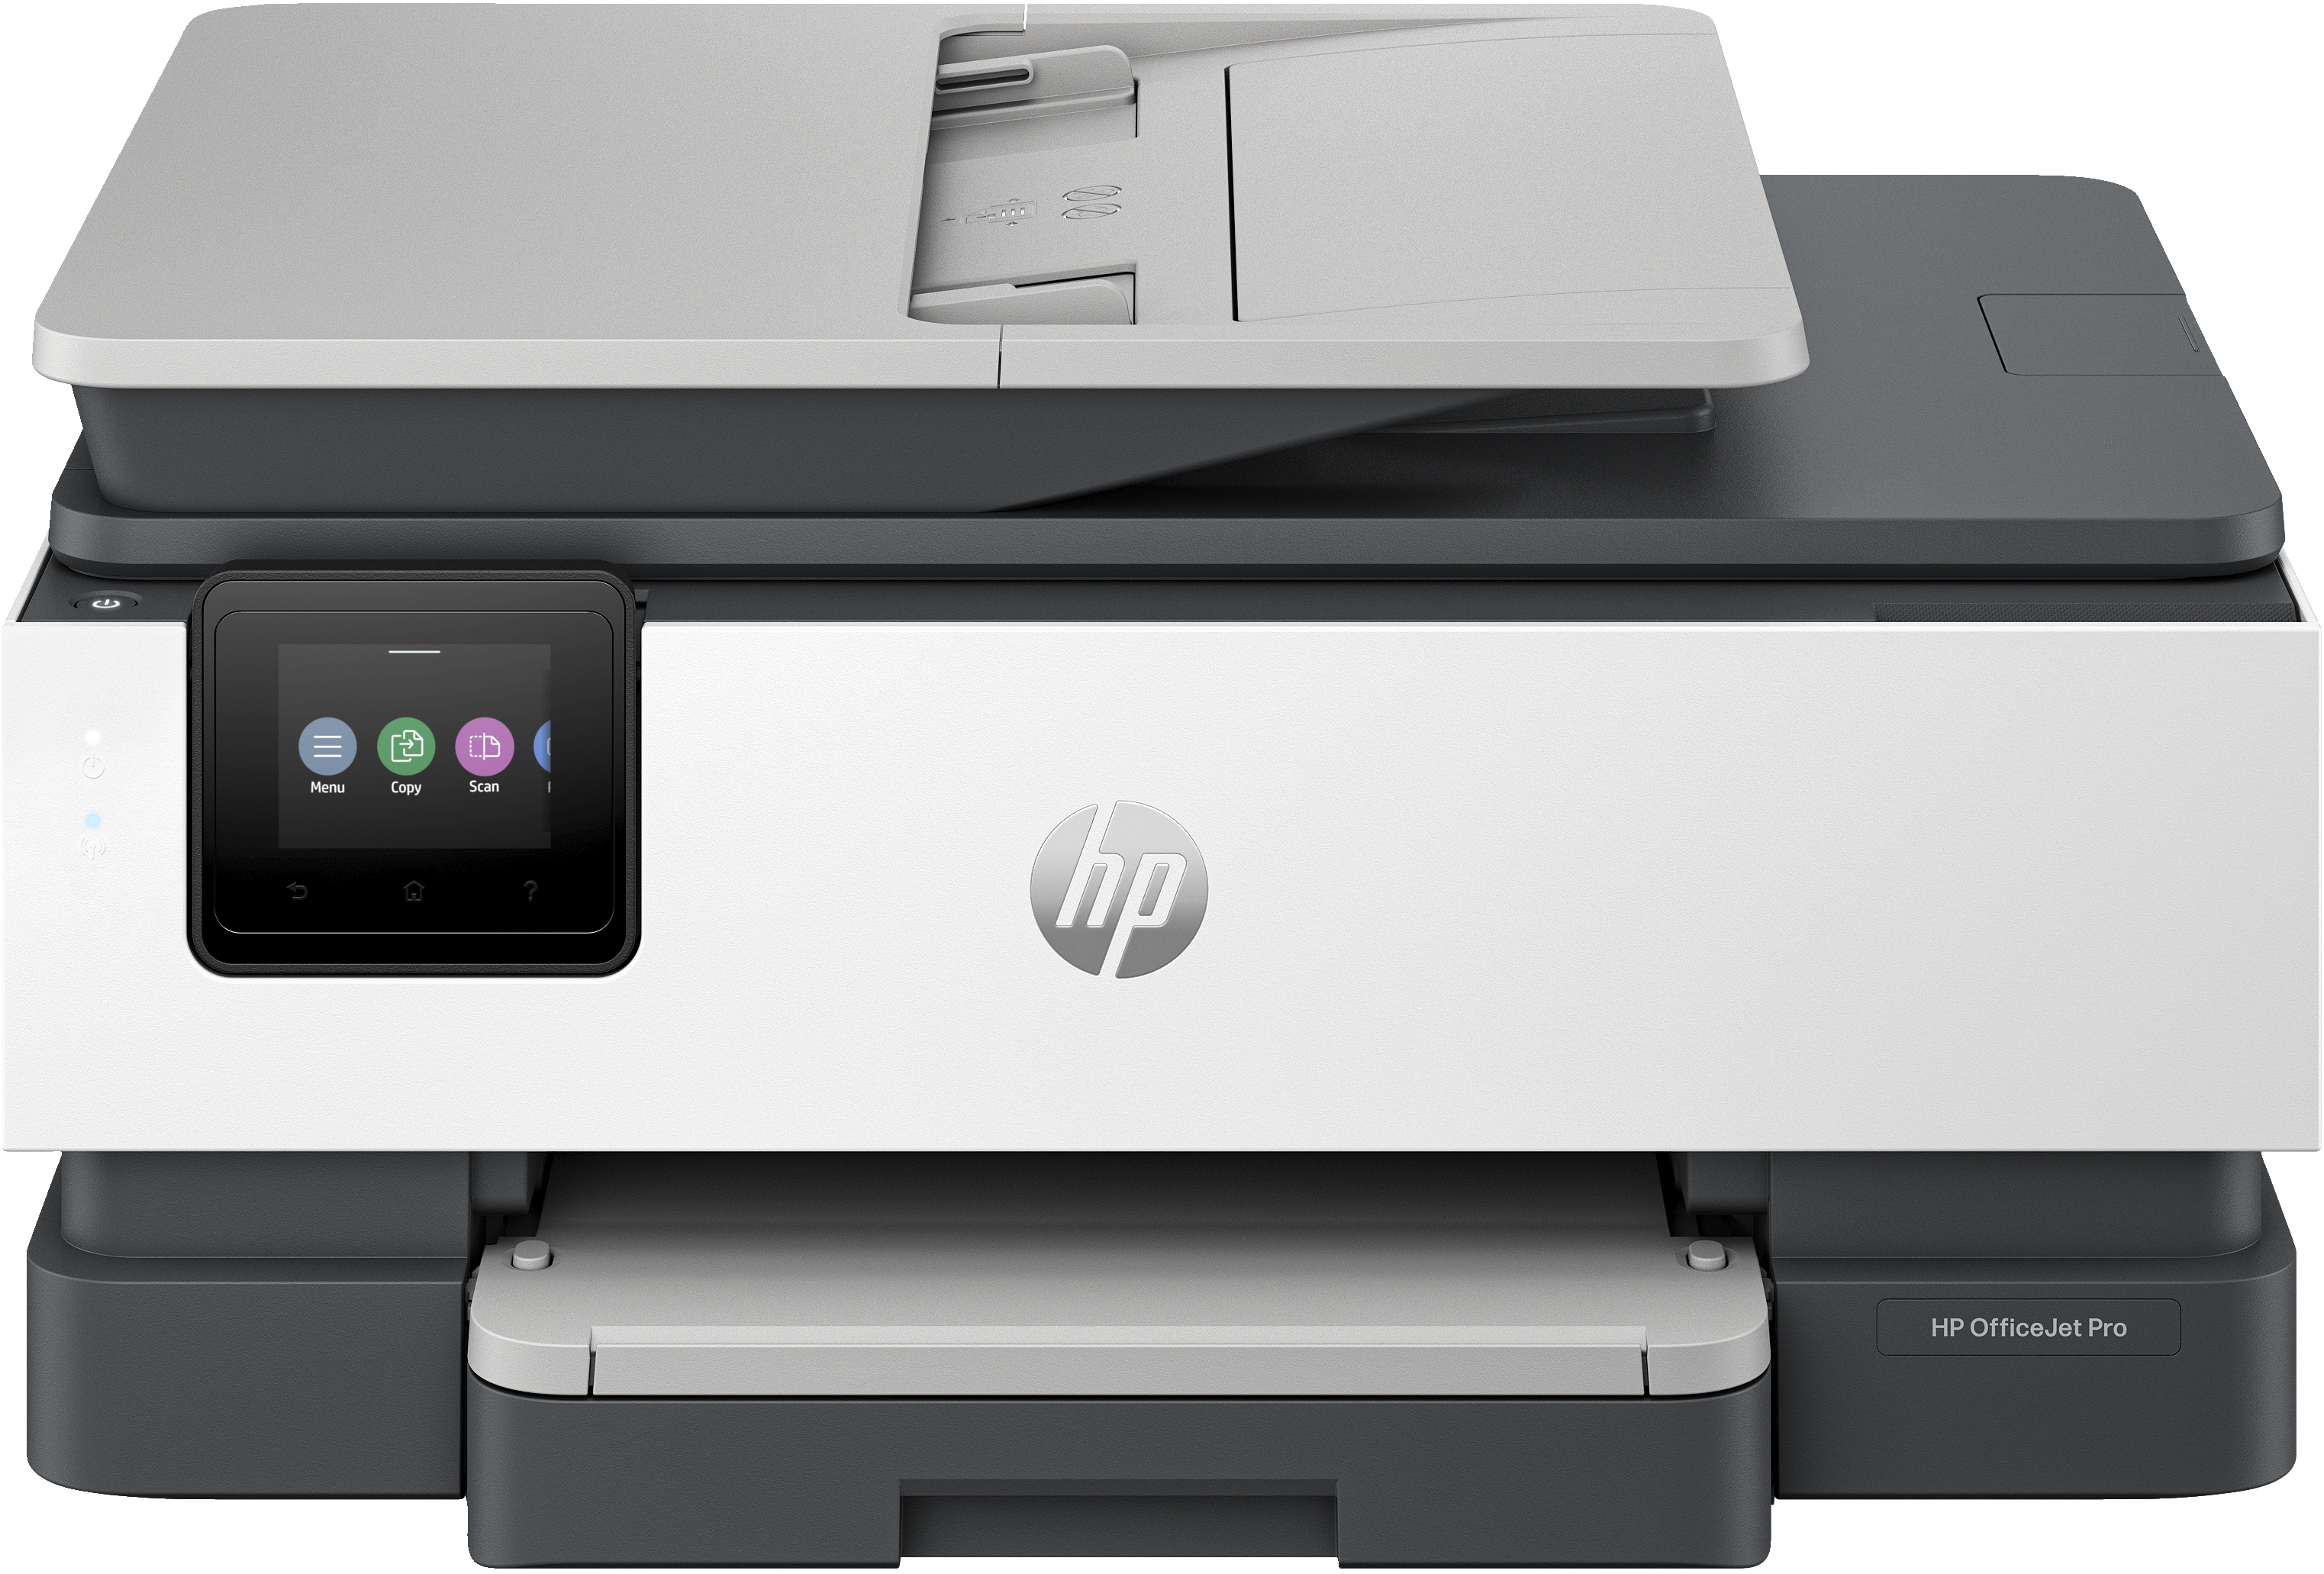 HP OfficeJet Pro Stampante multifunzione HP 8135e, Colore, Stampante per Casa, Stampa, copia, scansione, fax, idonea a HP Instant Ink; alimentatore automatico di documenti; touchscreen; Modalità silenziosa; Stampa tramite VPN con HP+